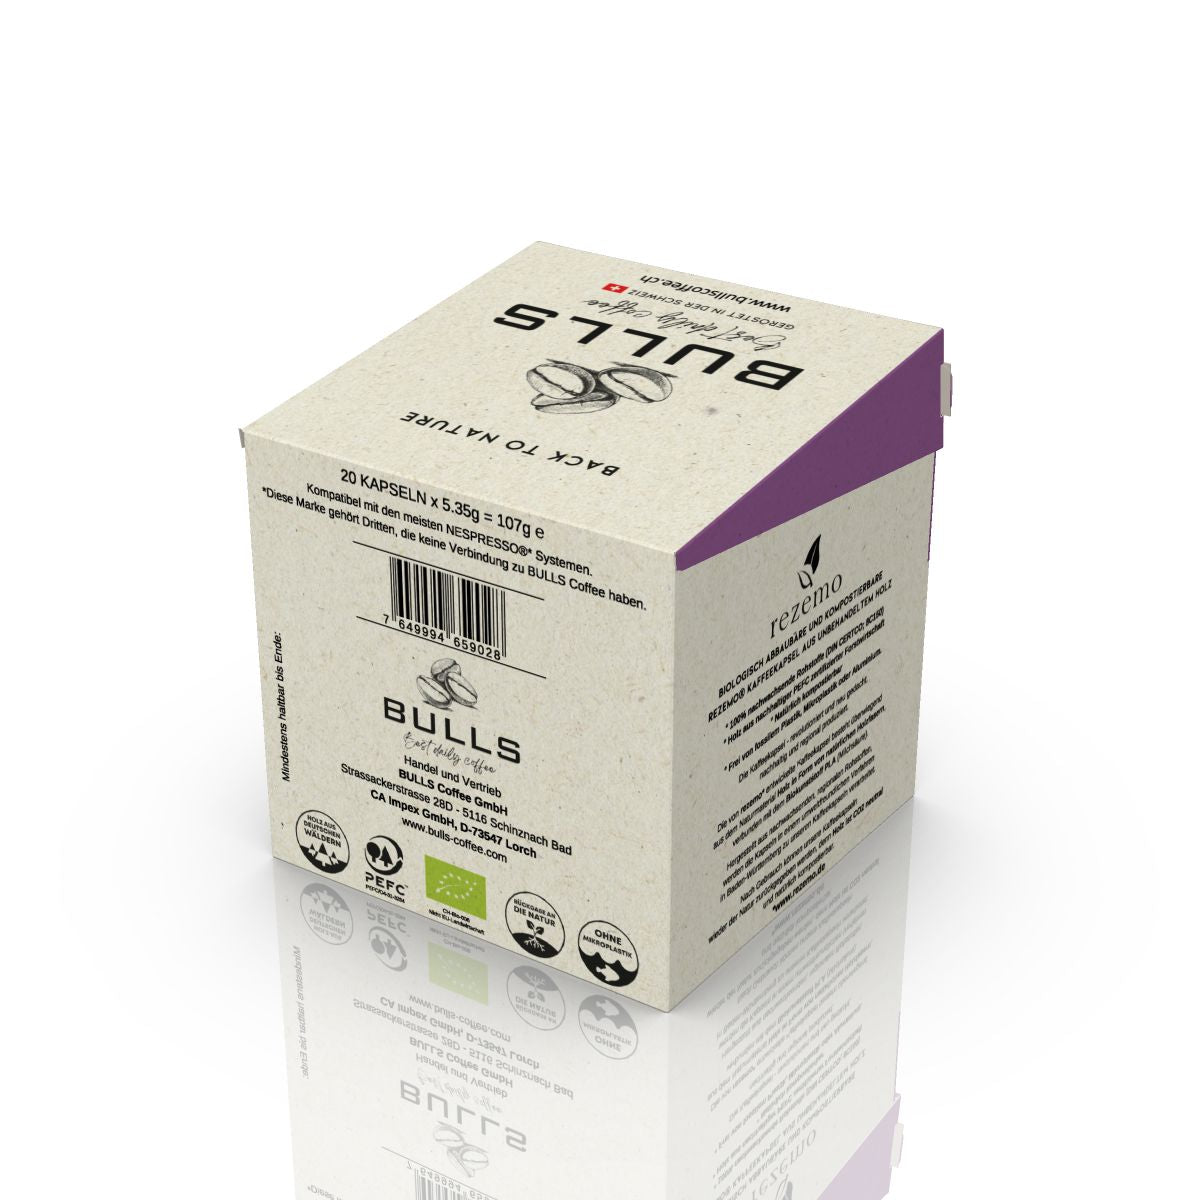 BULLS Purple Edition - Espresso/Lungo - Holzkapseln (Vorbestellung - Auslieferung erfolgt Ende Mai)